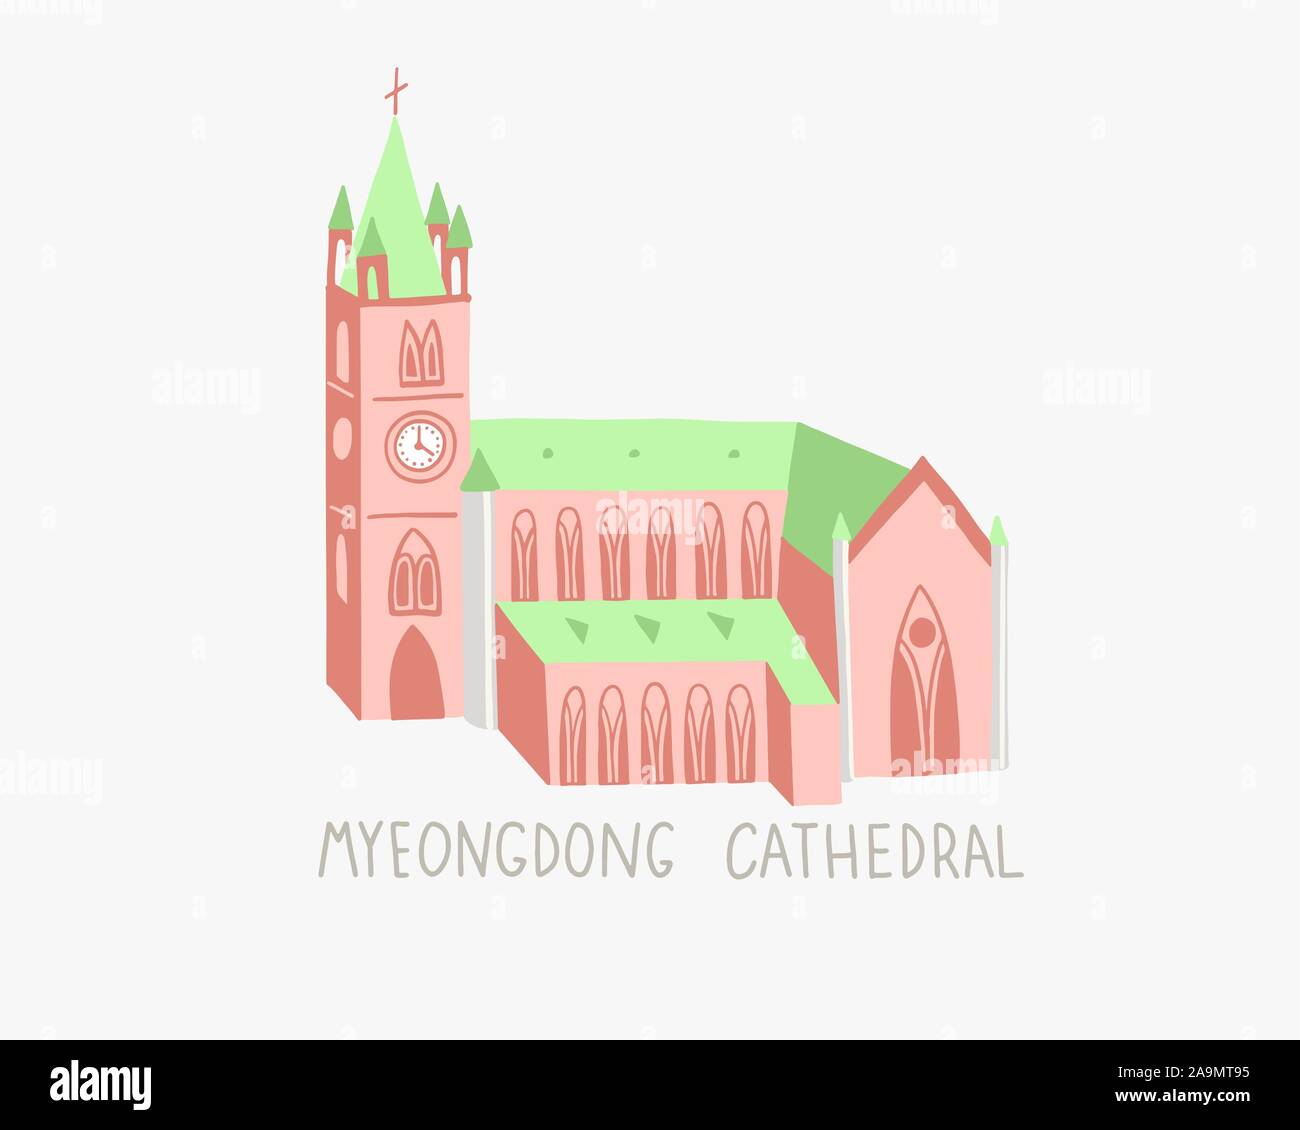 Illustration de cathédrale Myeongdong à Séoul en Corée du Sud Illustration de Vecteur